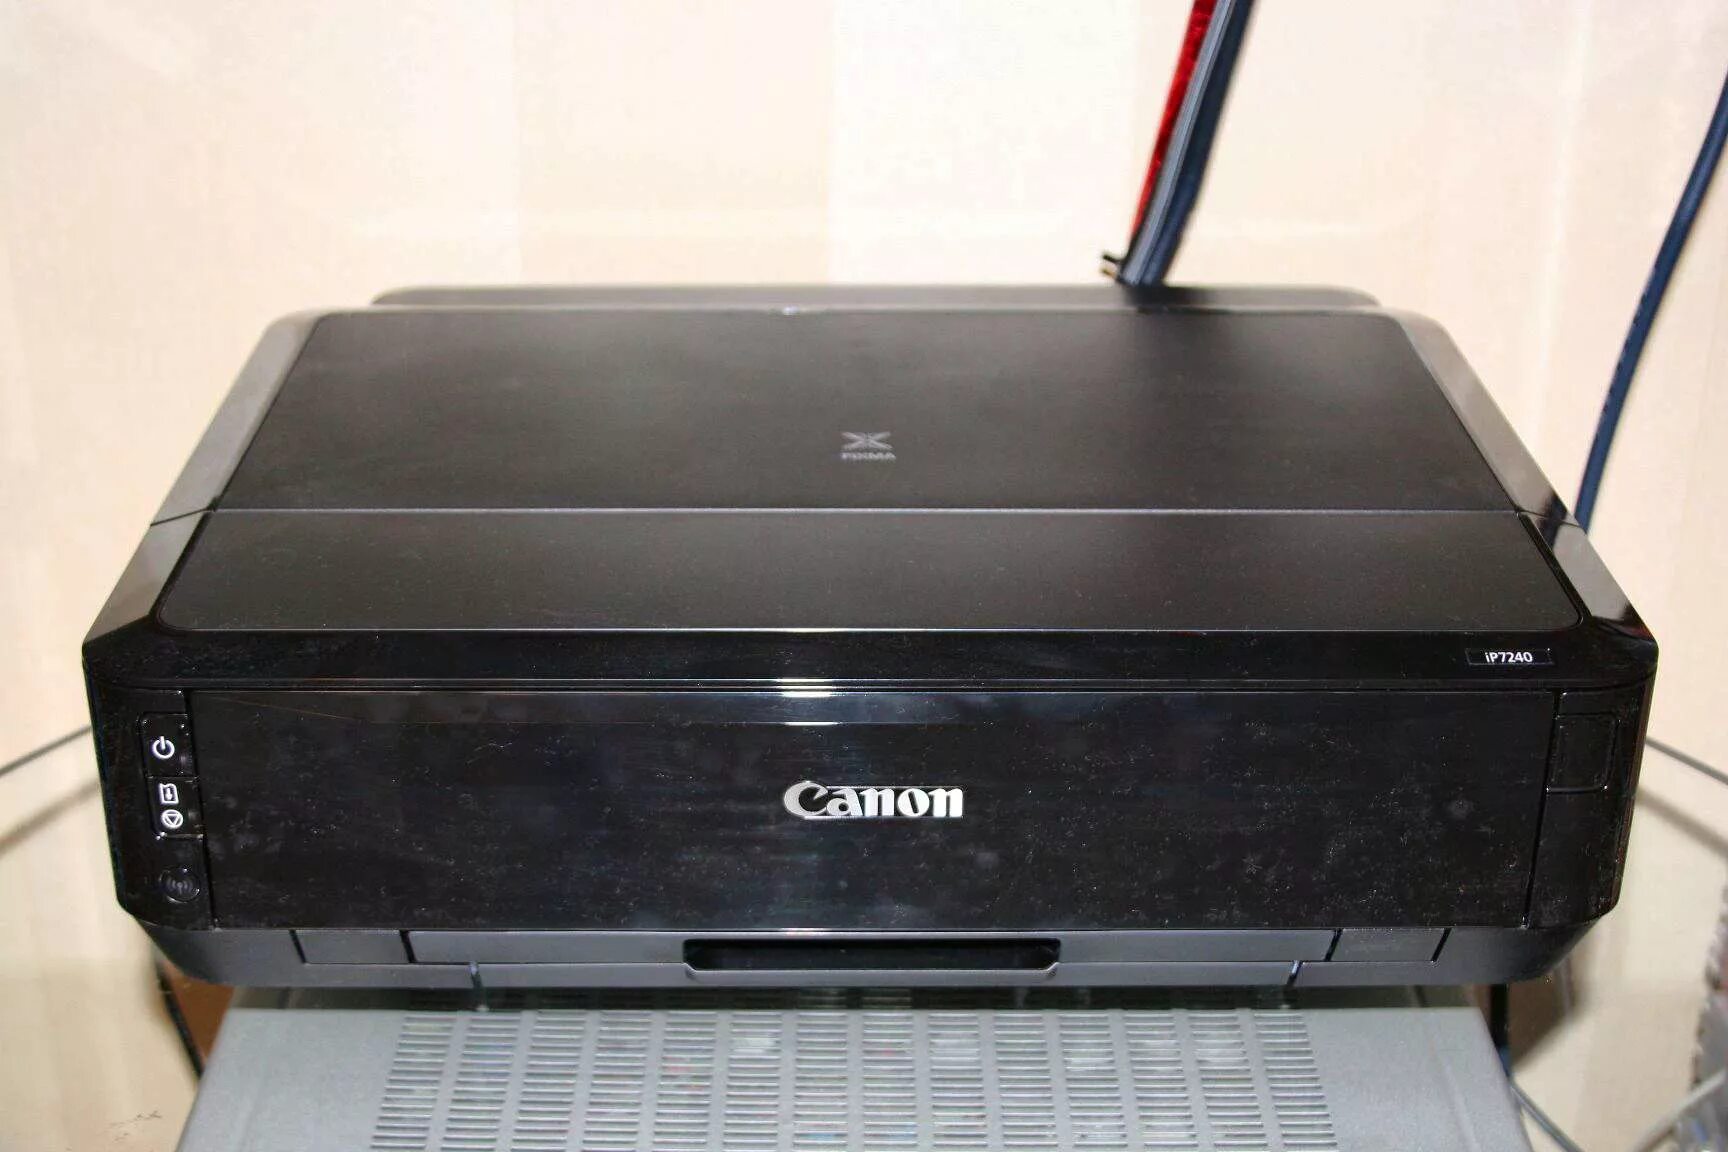 Принтер Кэнон ip7240. Принтер Canon 7240. Принтер Canon PIXMA 7240. Принтер Canon PIXMA ip7240. Canon ip7240 купить